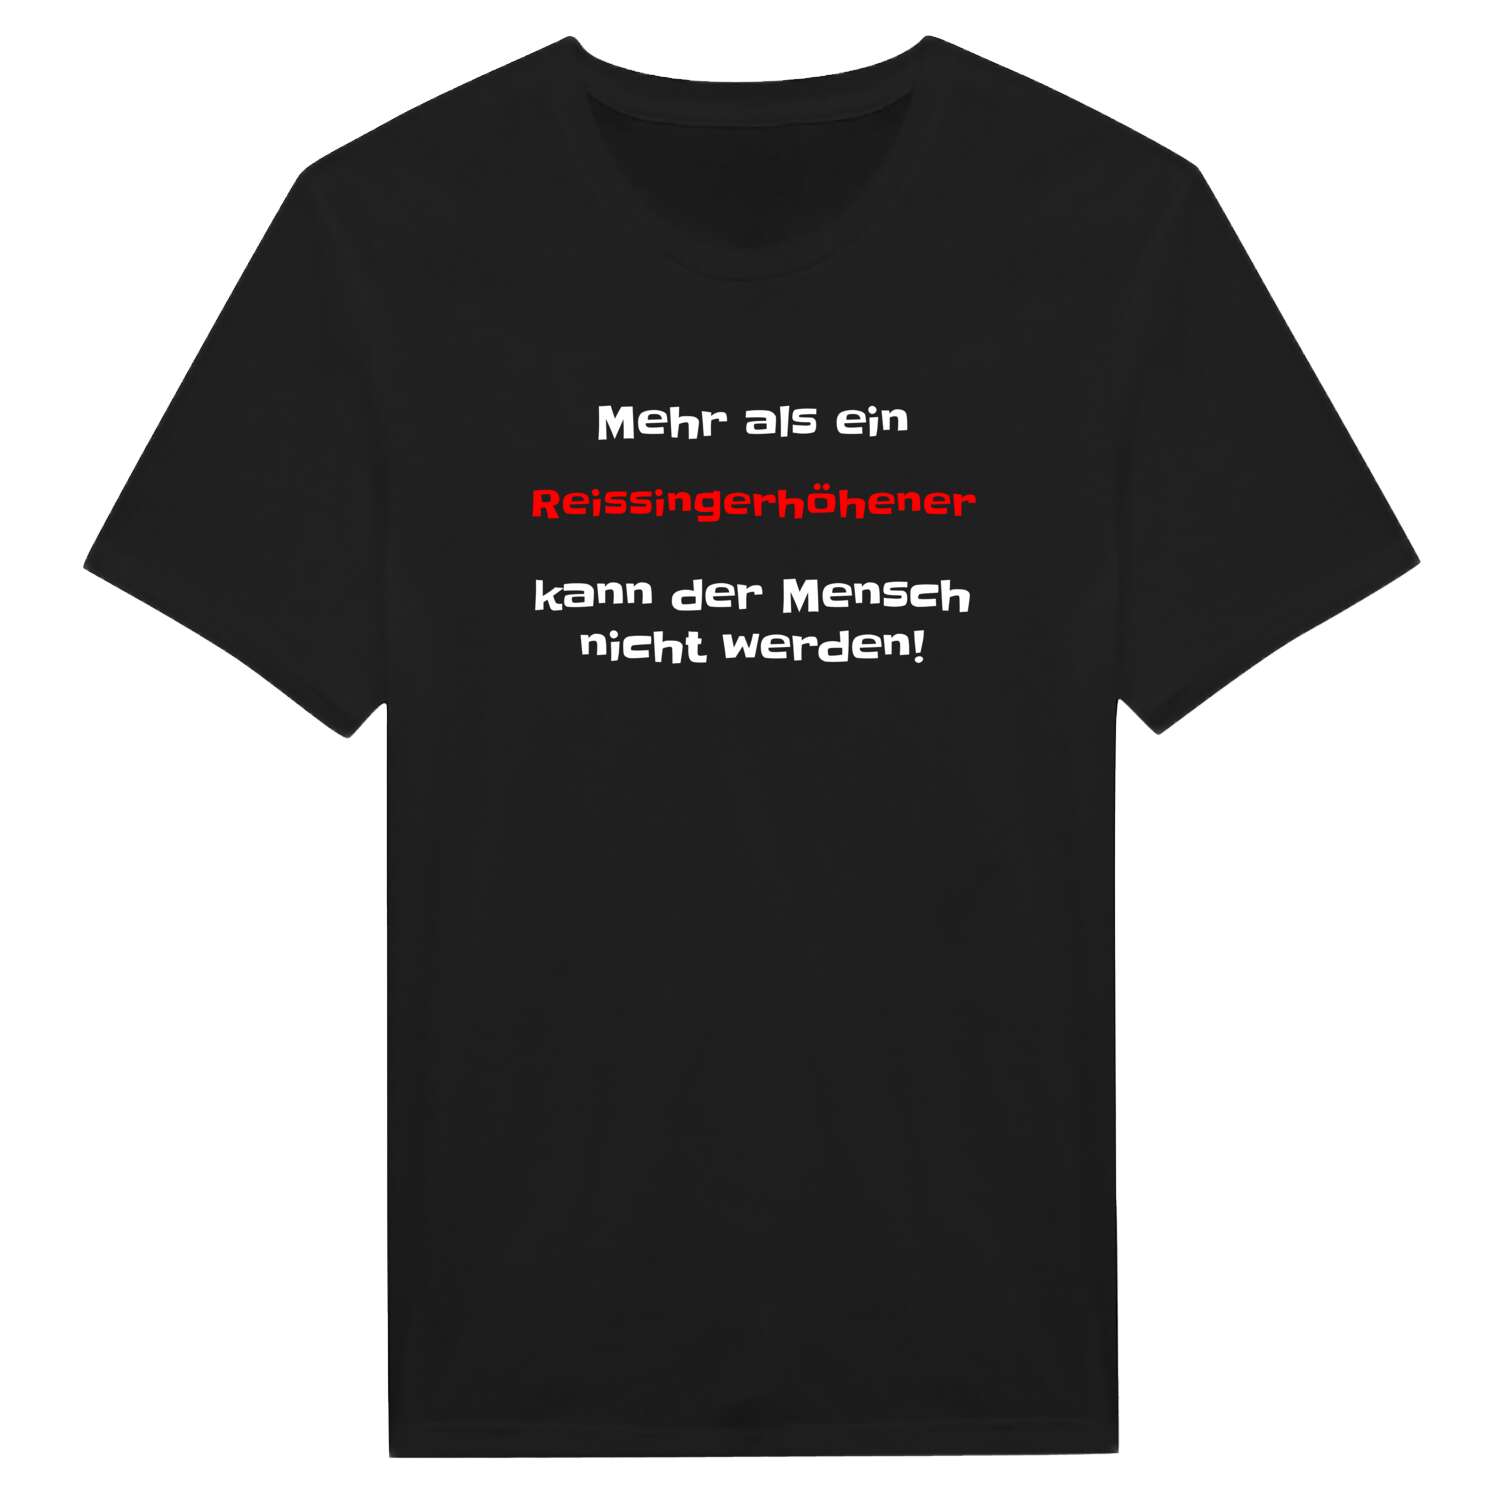 Reissingerhöhe T-Shirt »Mehr als ein«